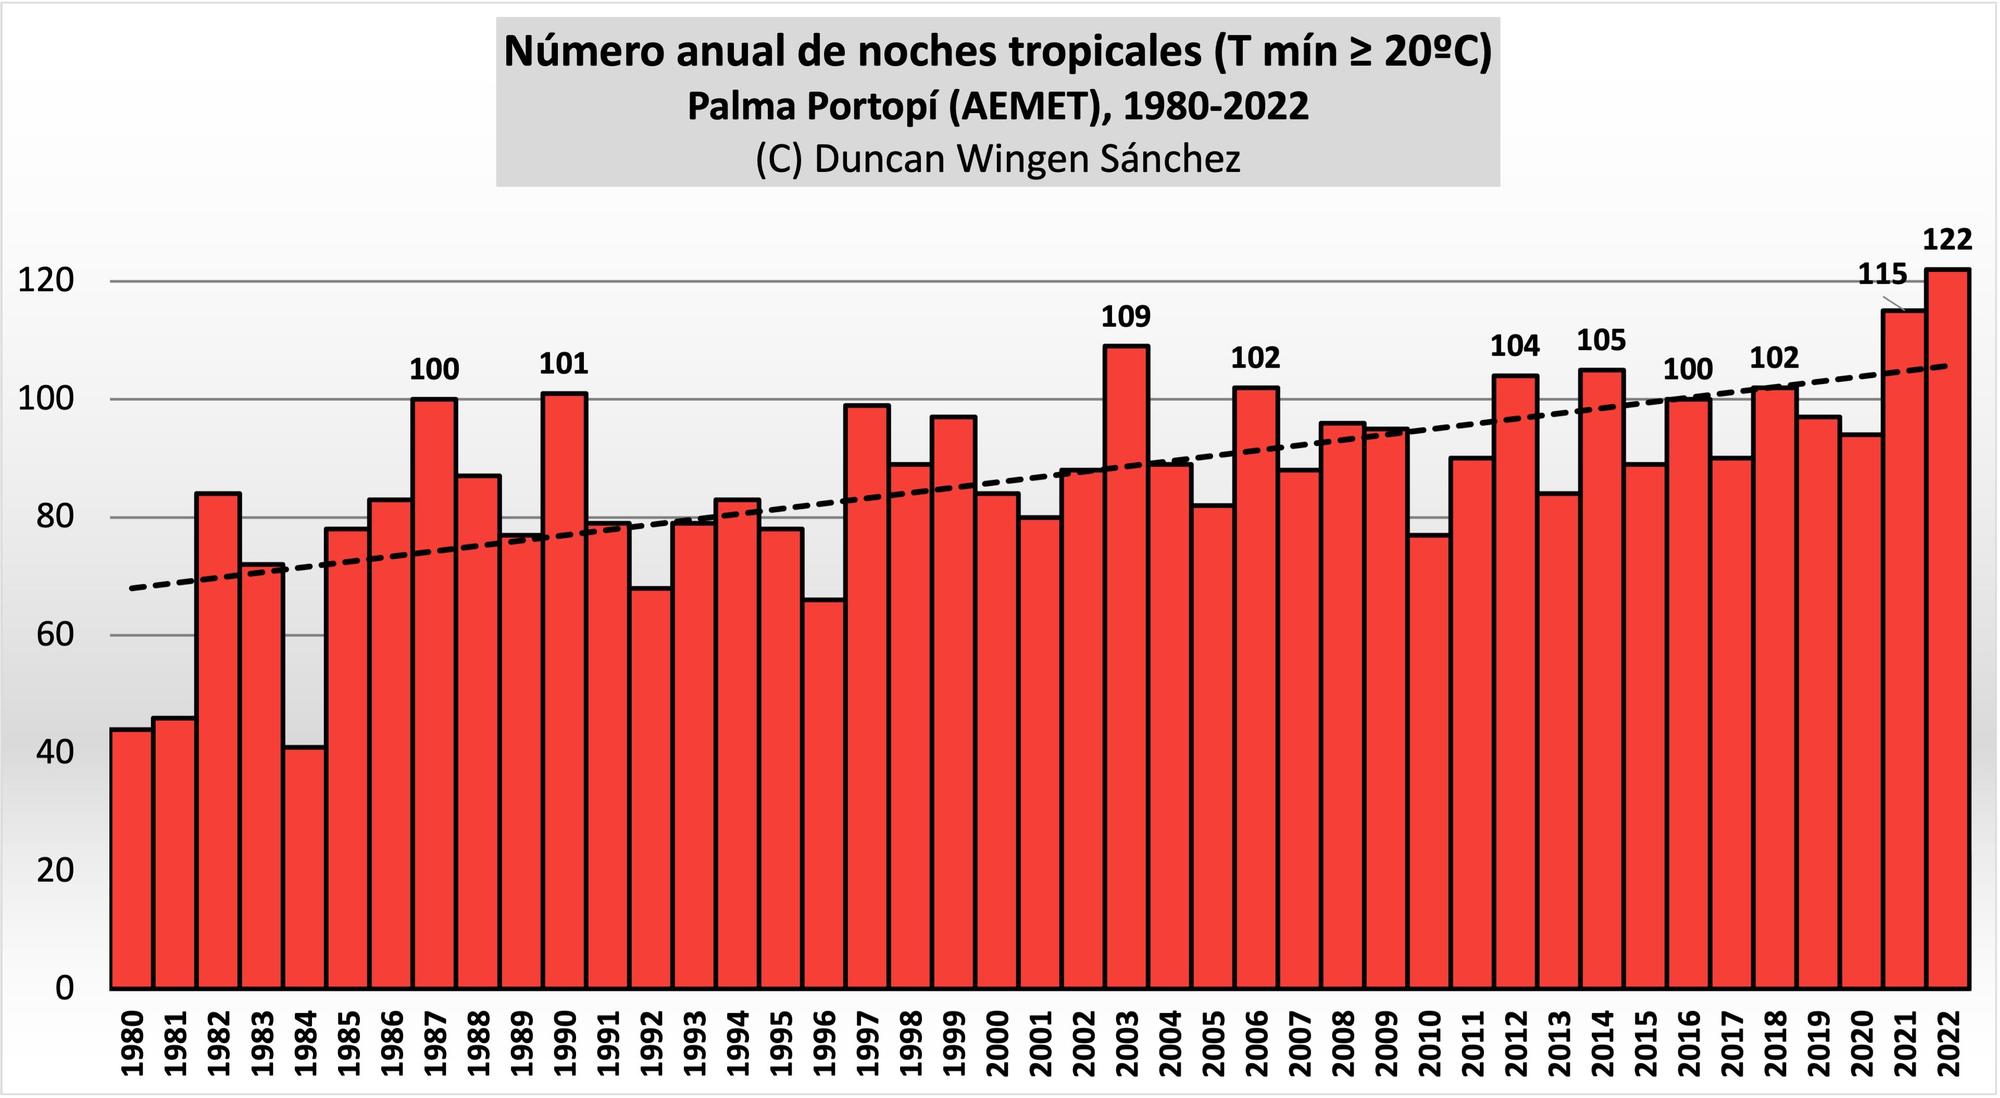 El gráfico muestra el número anual de noches tropicales registradas en el puerto de Palma desde 1980. La línea discontinua muestra la tendencia en aumento del número de noches cálidas en la ciudad.